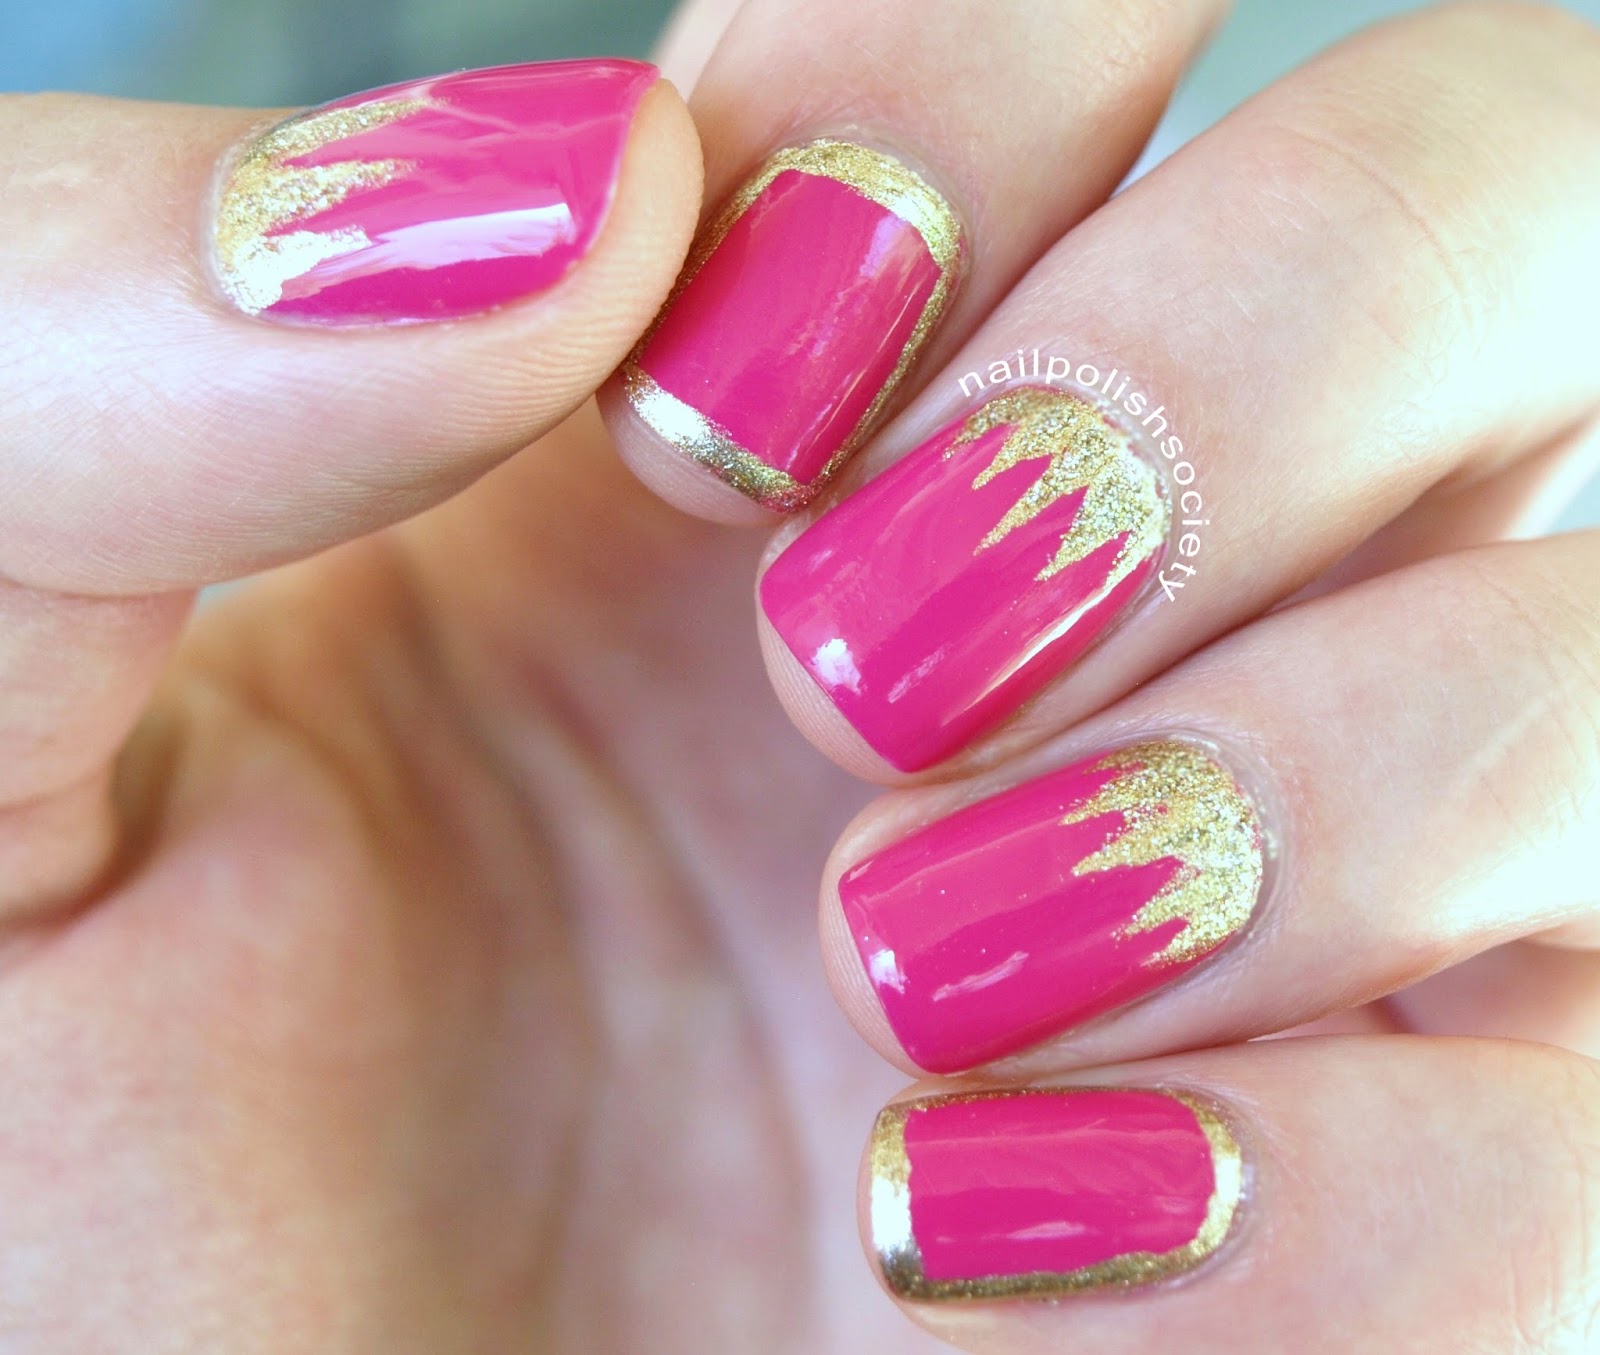 Nail Polish Society: Royally Pink and Gold